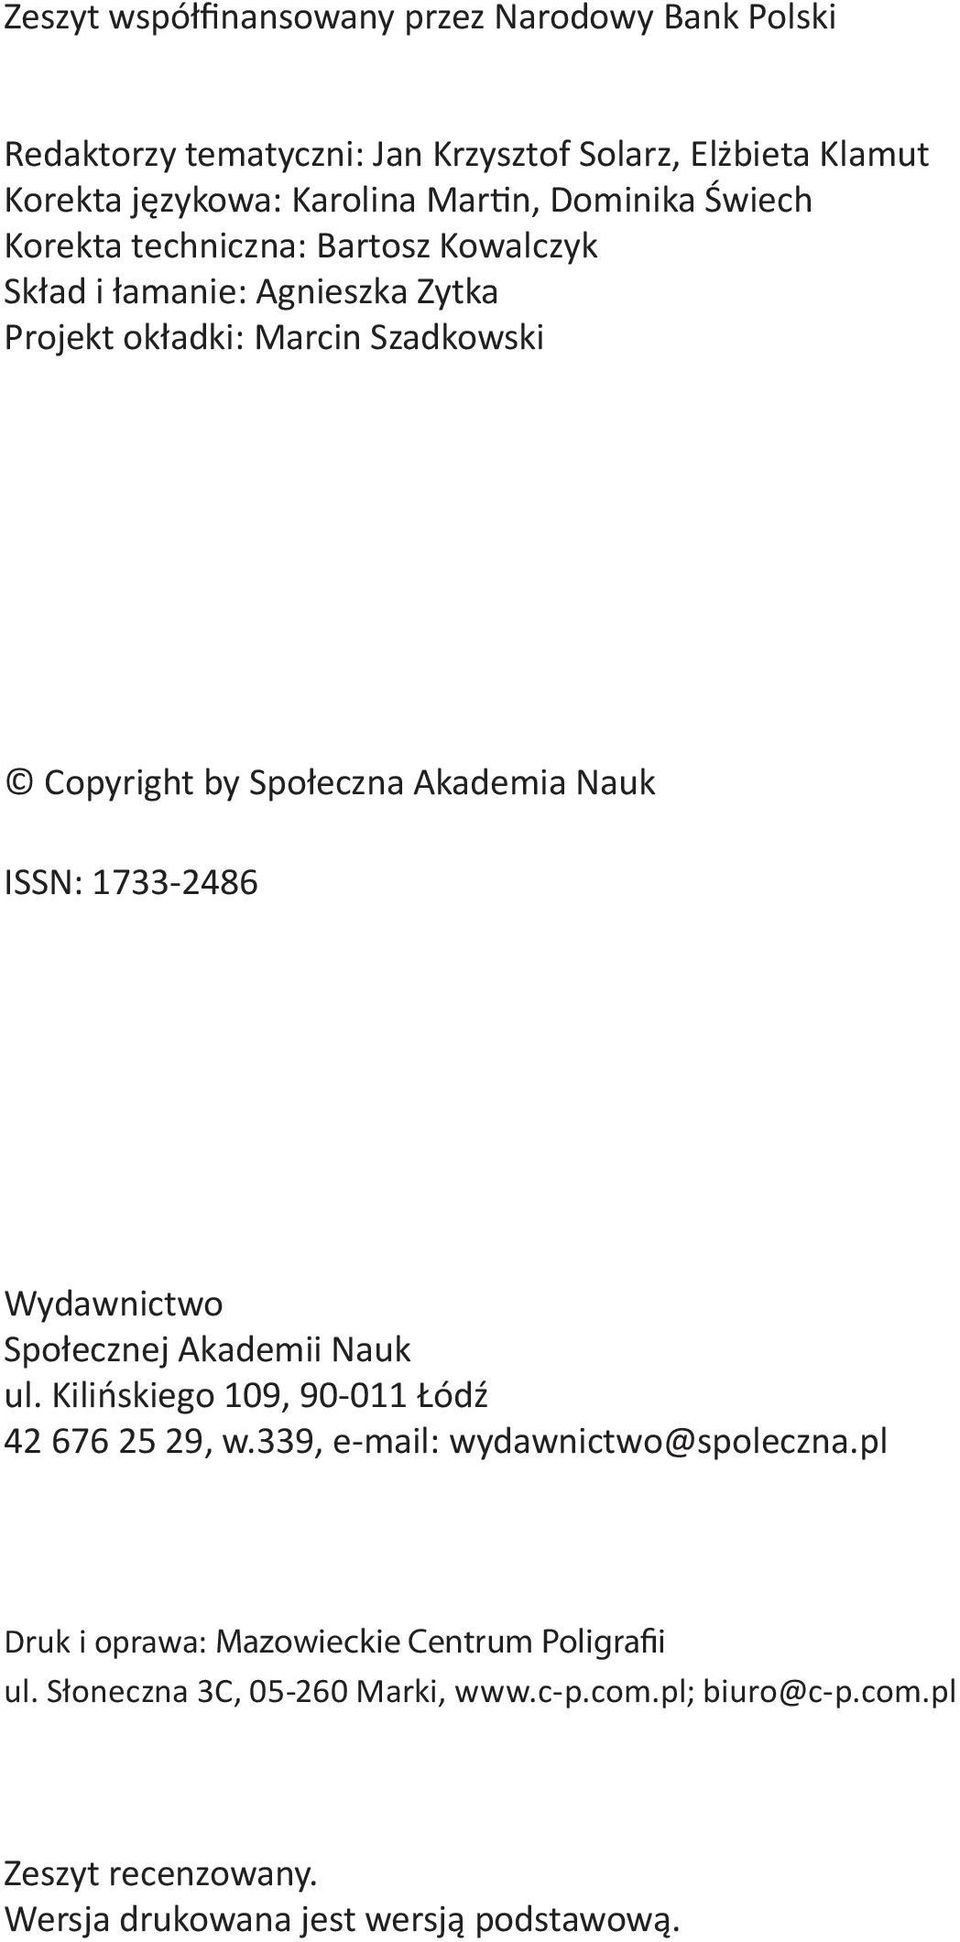 Nauk ISSN: 1733-2486 Wydawnictwo Społecznej Akademii Nauk ul. Kilińskiego 109, 90-011 Łódź 42 676 25 29, w.339, e-mail: wydawnictwo@spoleczna.